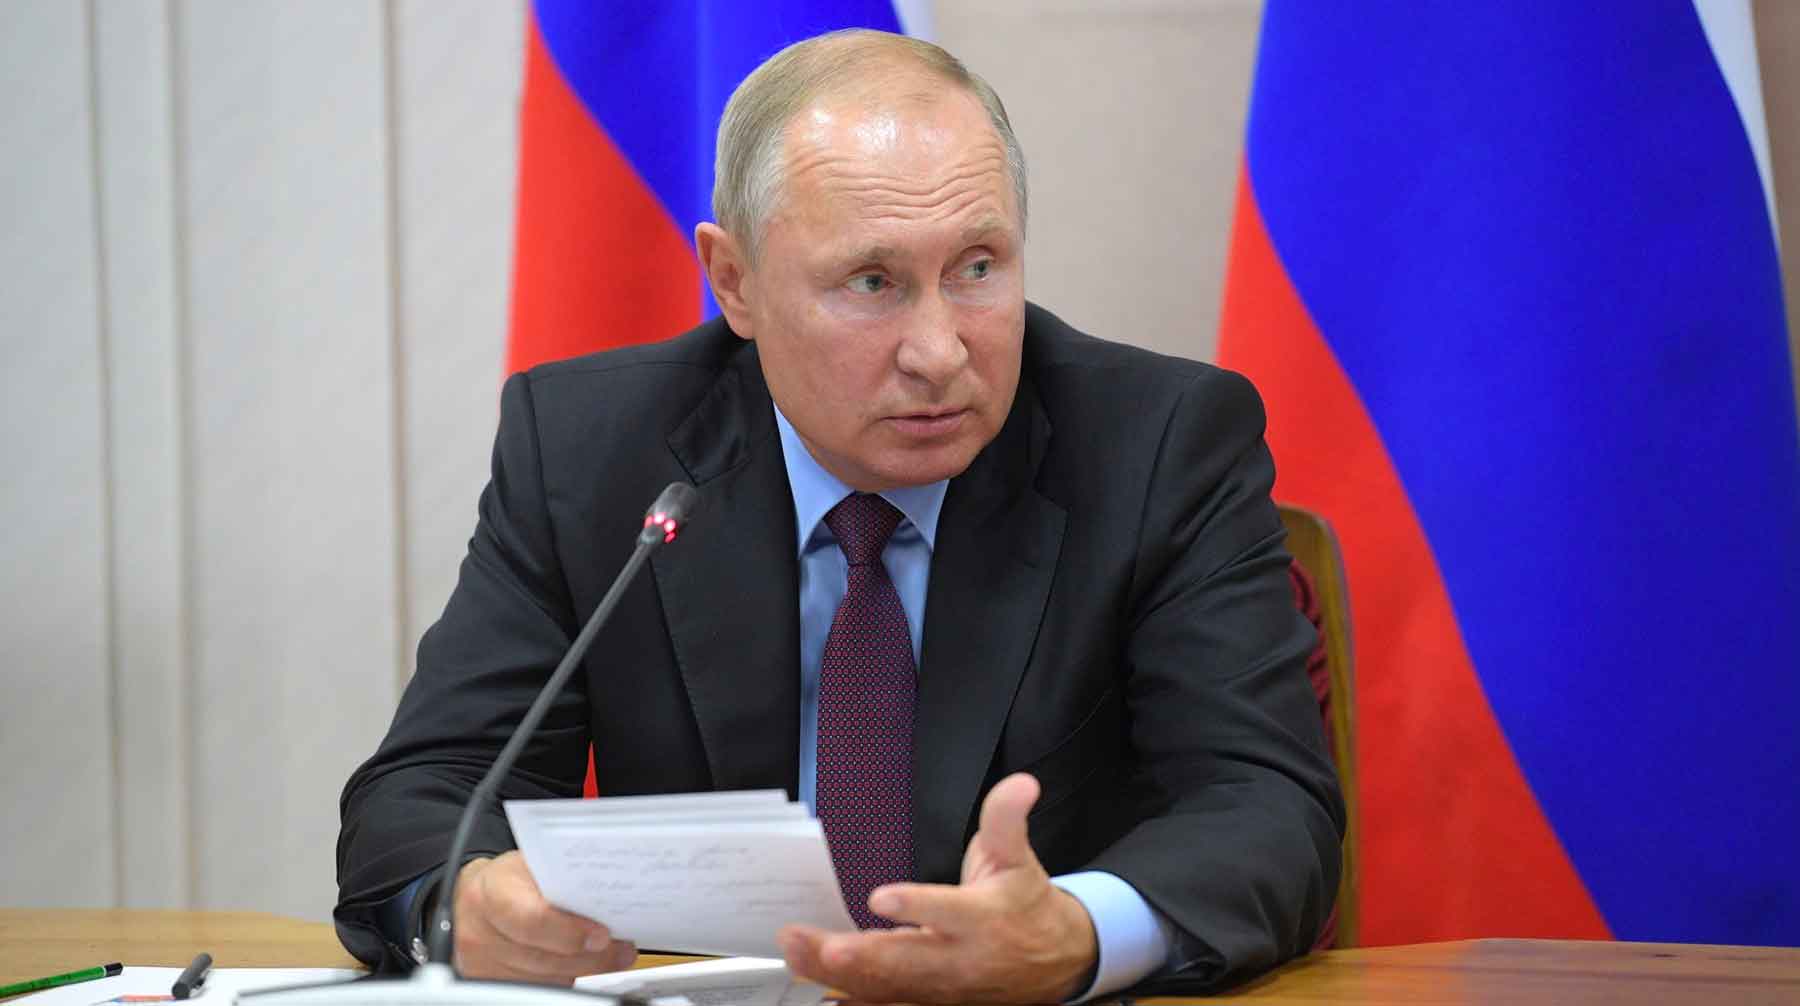 Президент России признался, что был не в курсе данного инцидента, но если это правда, то губернатор должен принять меры Фото: © GLOBAL LOOK press / Kremlin Pool